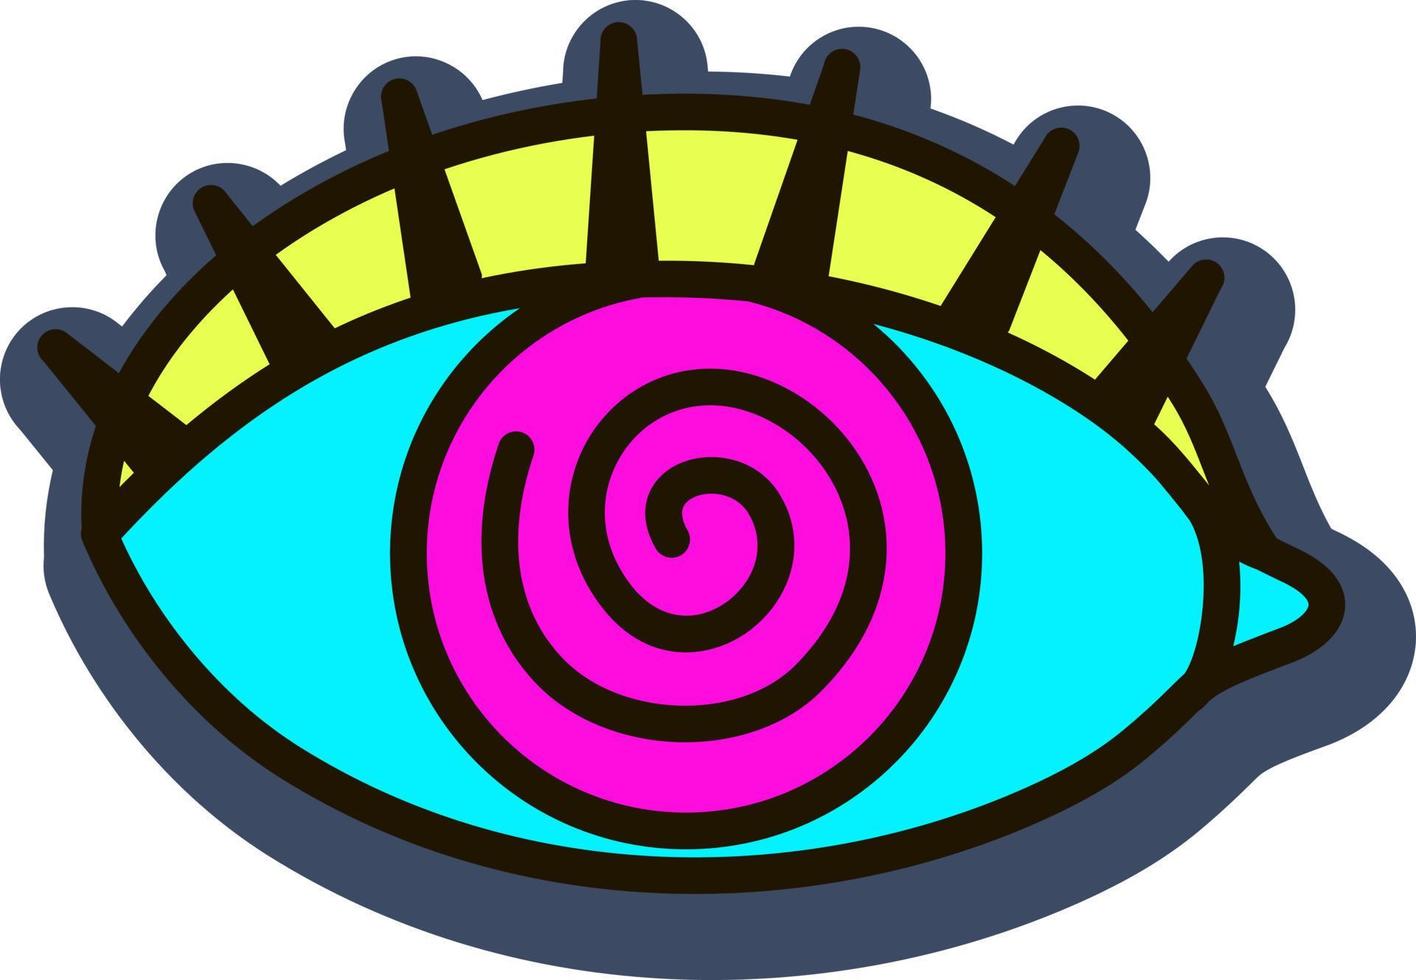 trippy öga. overkligt psychedelic illustration. öga av försyn, mystisk talisman. magi och esoterisk tecken. vektor